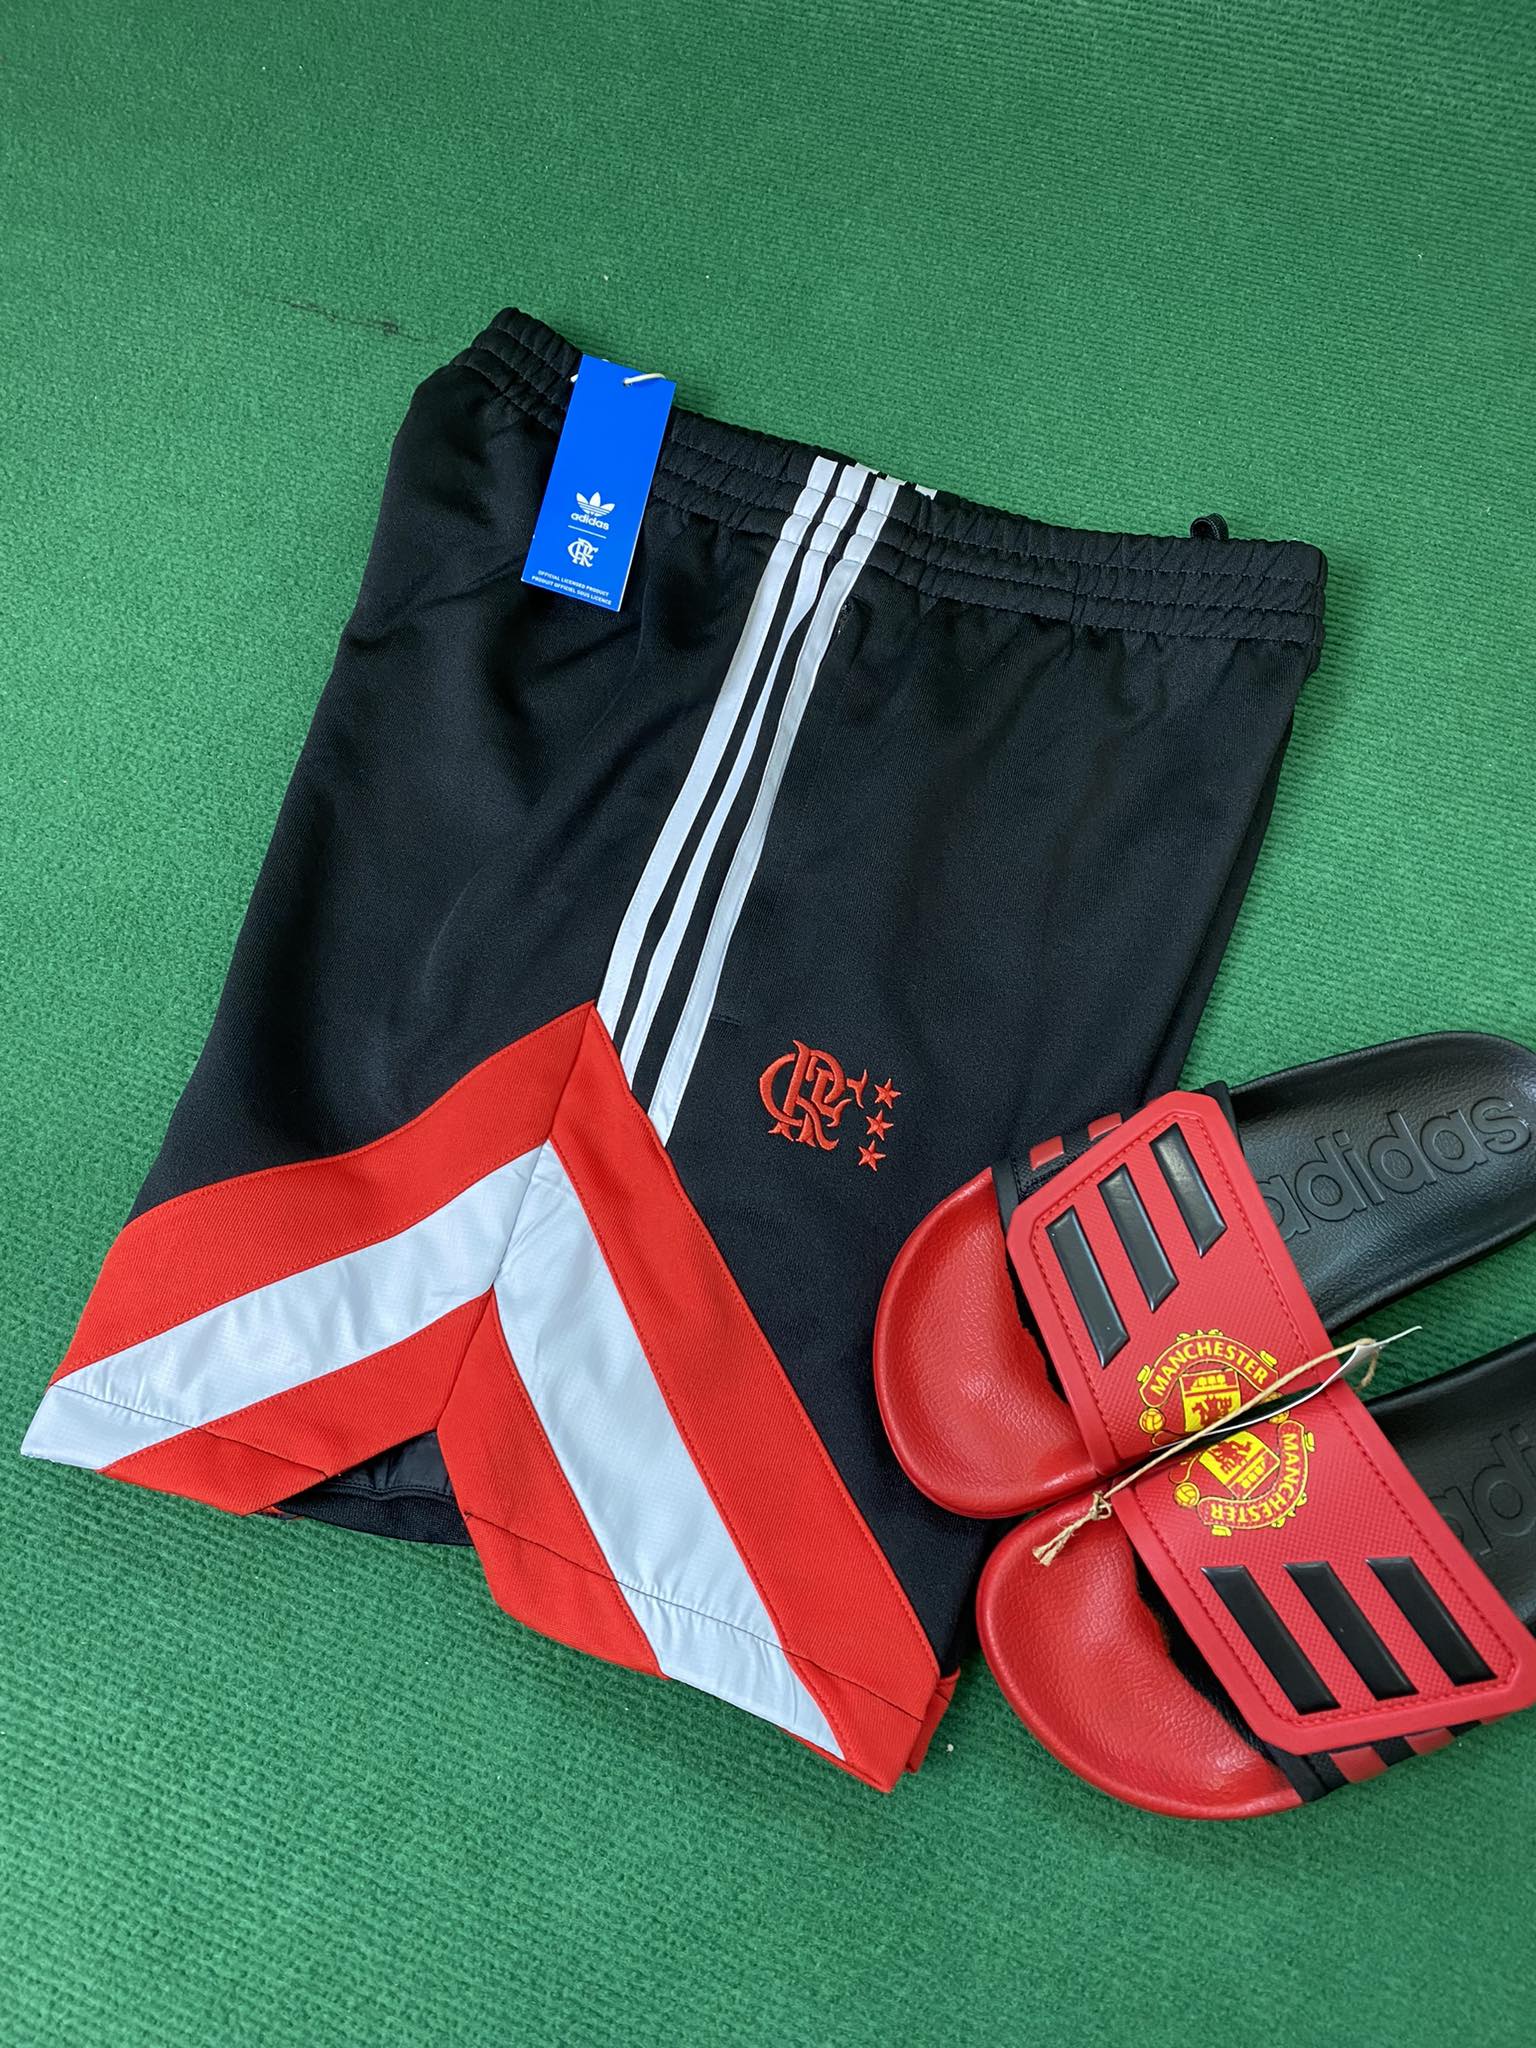 QUẦN SHORTS CHÍNH HÃNG - Adidas Originals Black/White/Red - IN5564